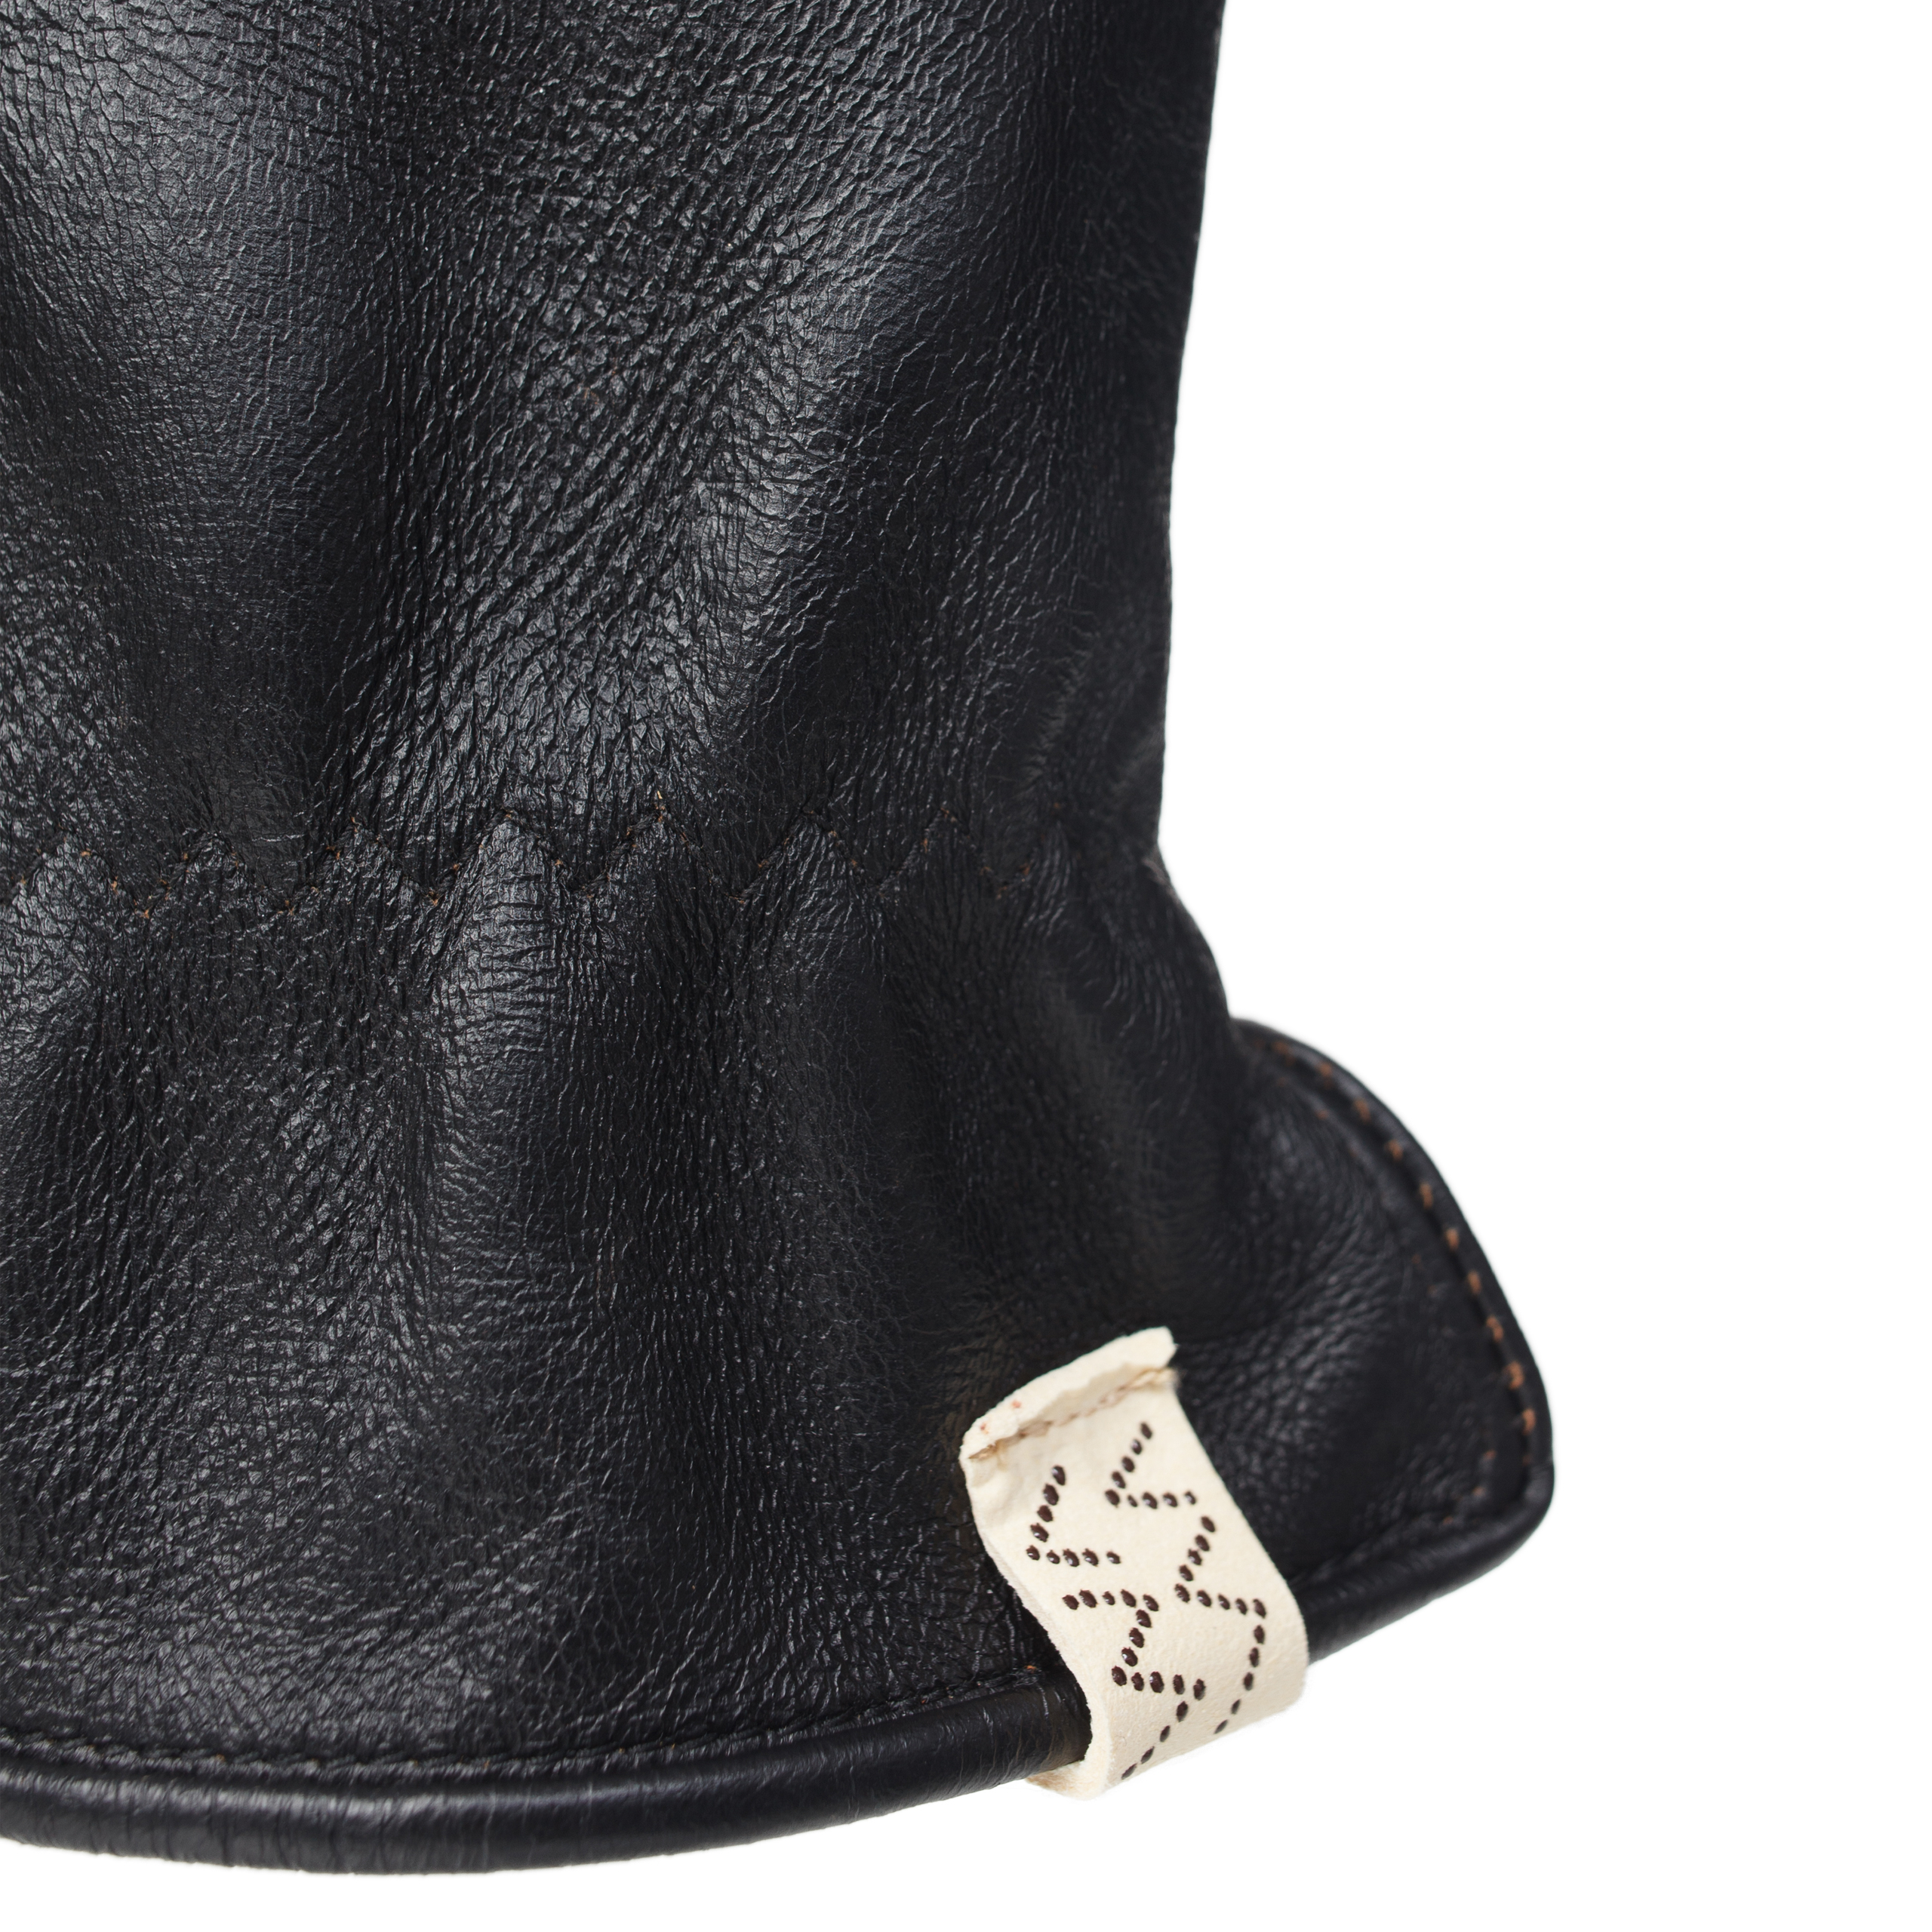 Кожаные перчатки с контрастными швами visvim 0124103003008, размер S/M;M/L - фото 4